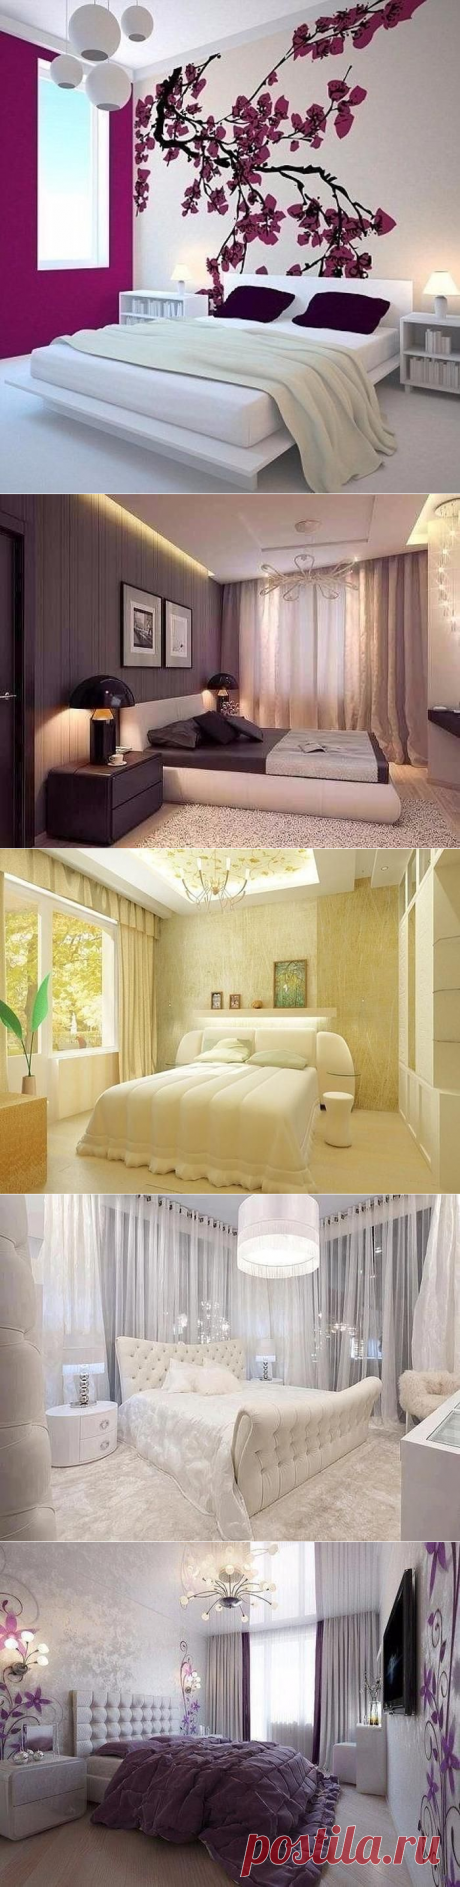 Спальня — место, где должно быть уютно и комфортно. 25 потрясающих идей для ремонта | Тысяча и одна идея